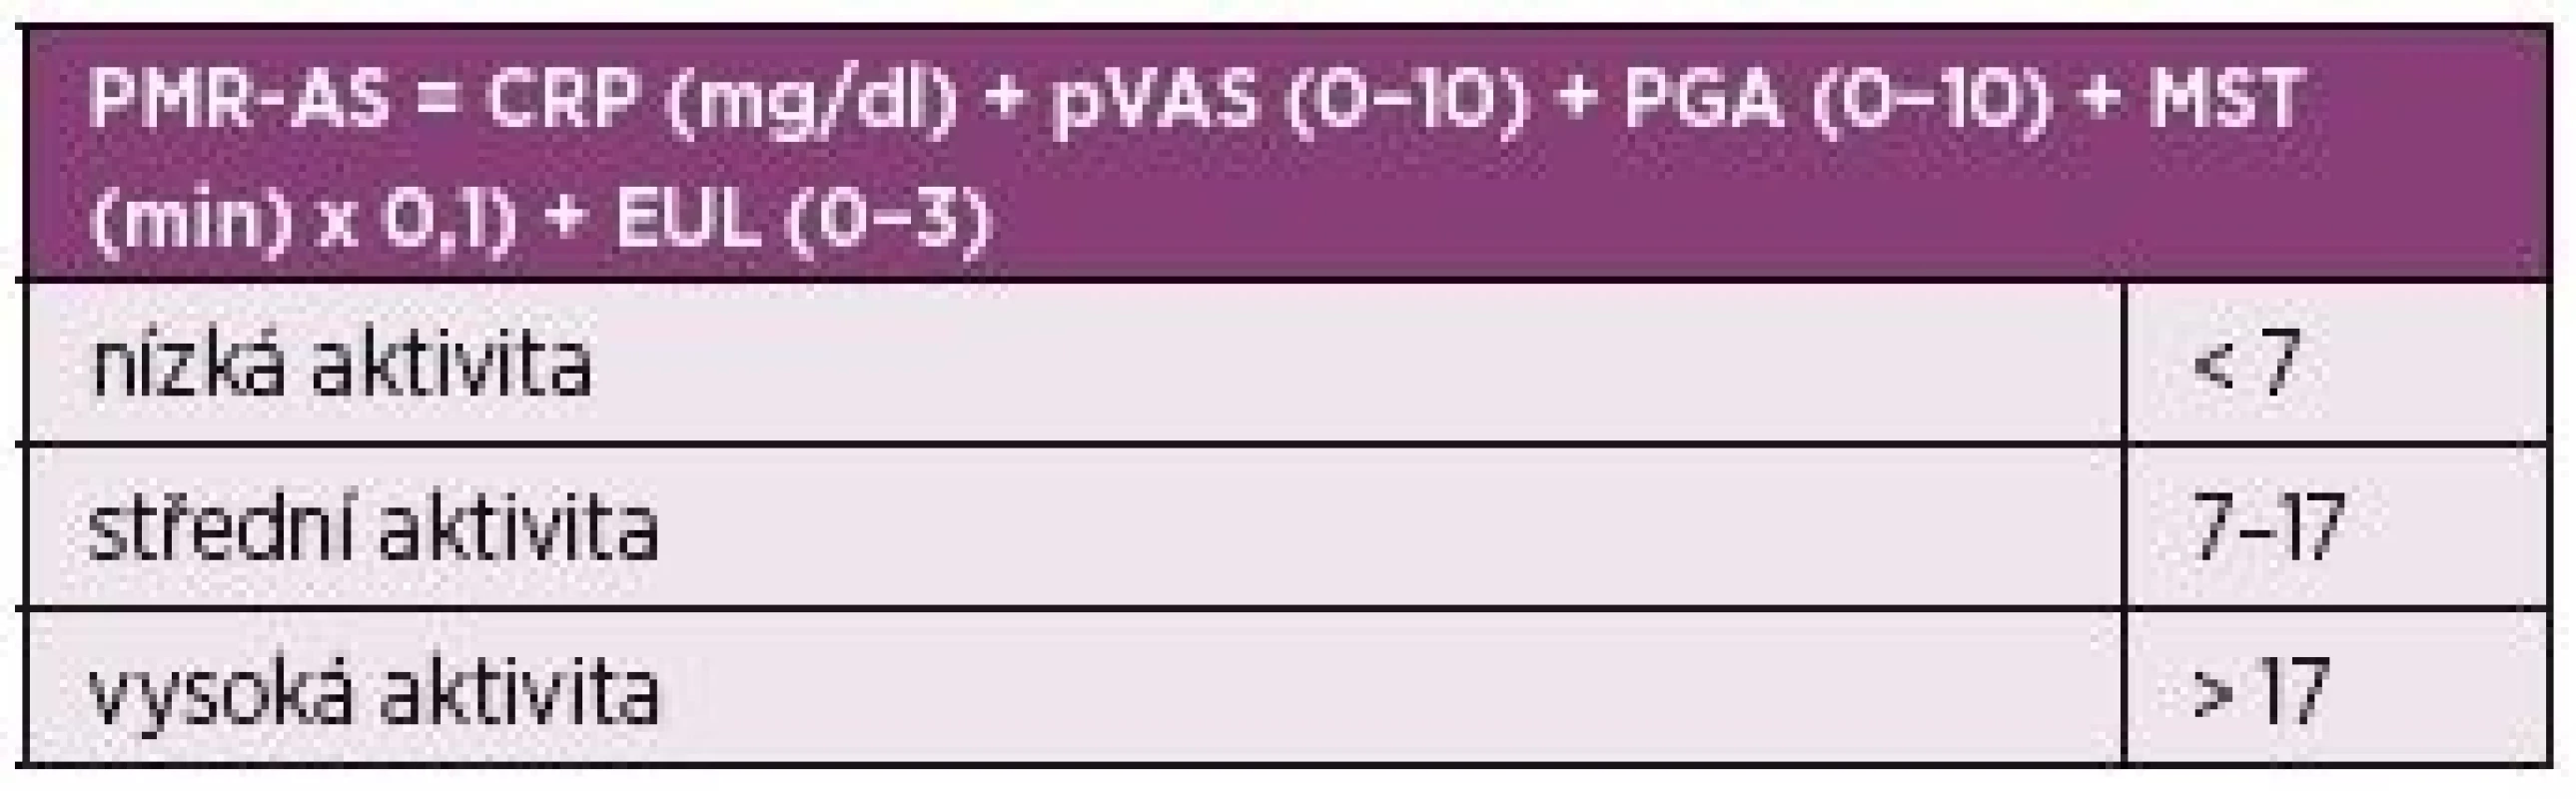 Kompozitní index k hodnocení aktivity polymylagia
rheumatica – Polymyalgia Rheumatica Activity Score (PMR-AS).